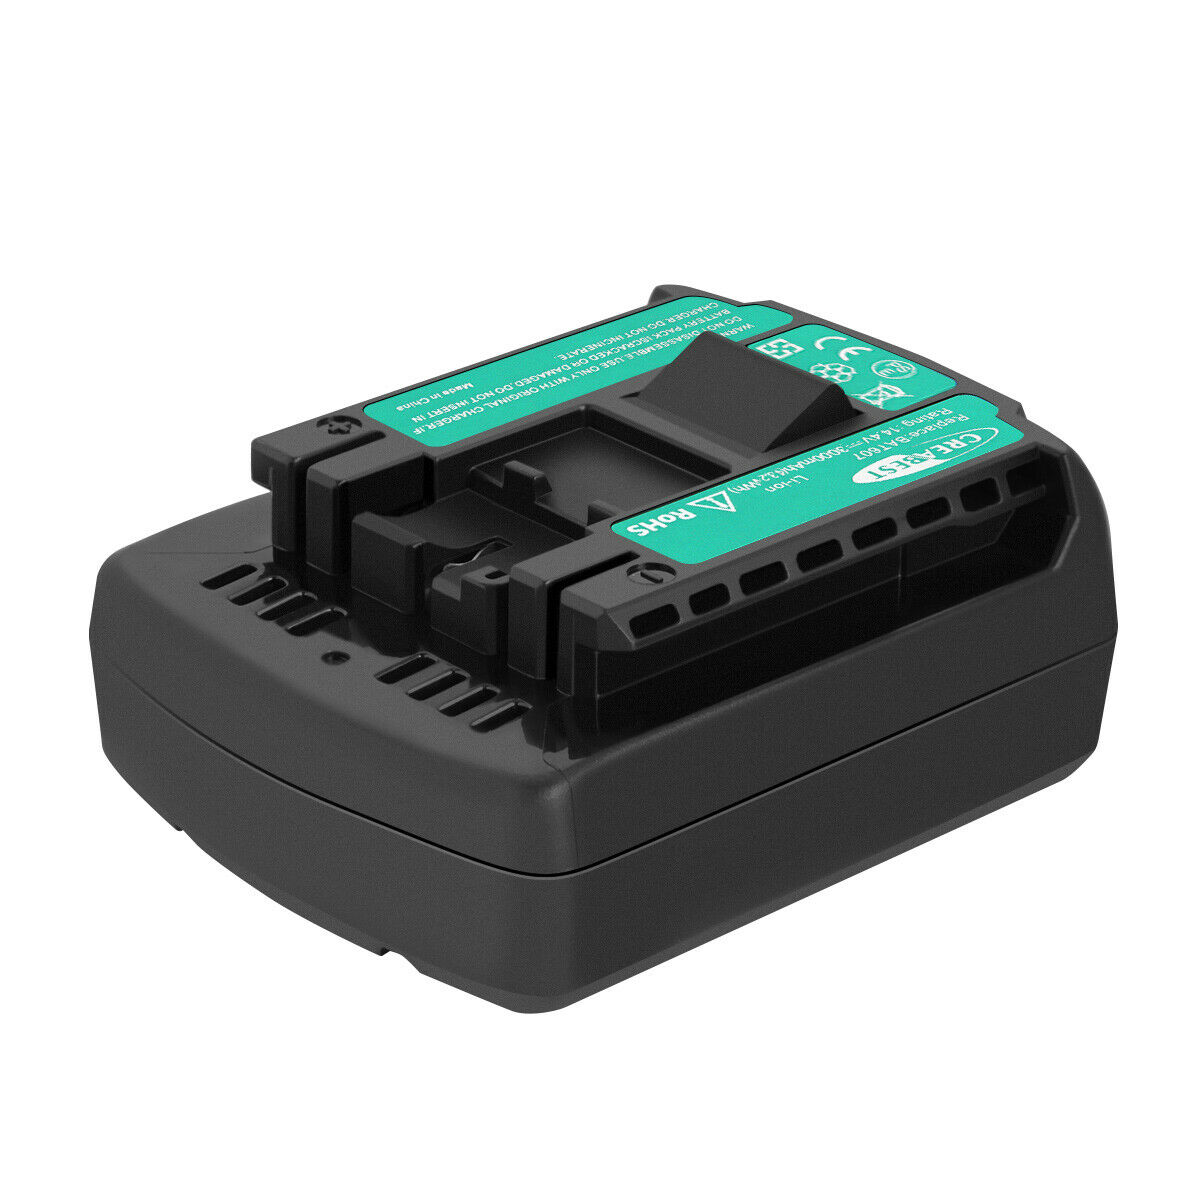 Bateria para Bosch DDB180-02,GDR 1080-LI,GDR 14.4 V-LI,GDR 14.4 V-LI MF